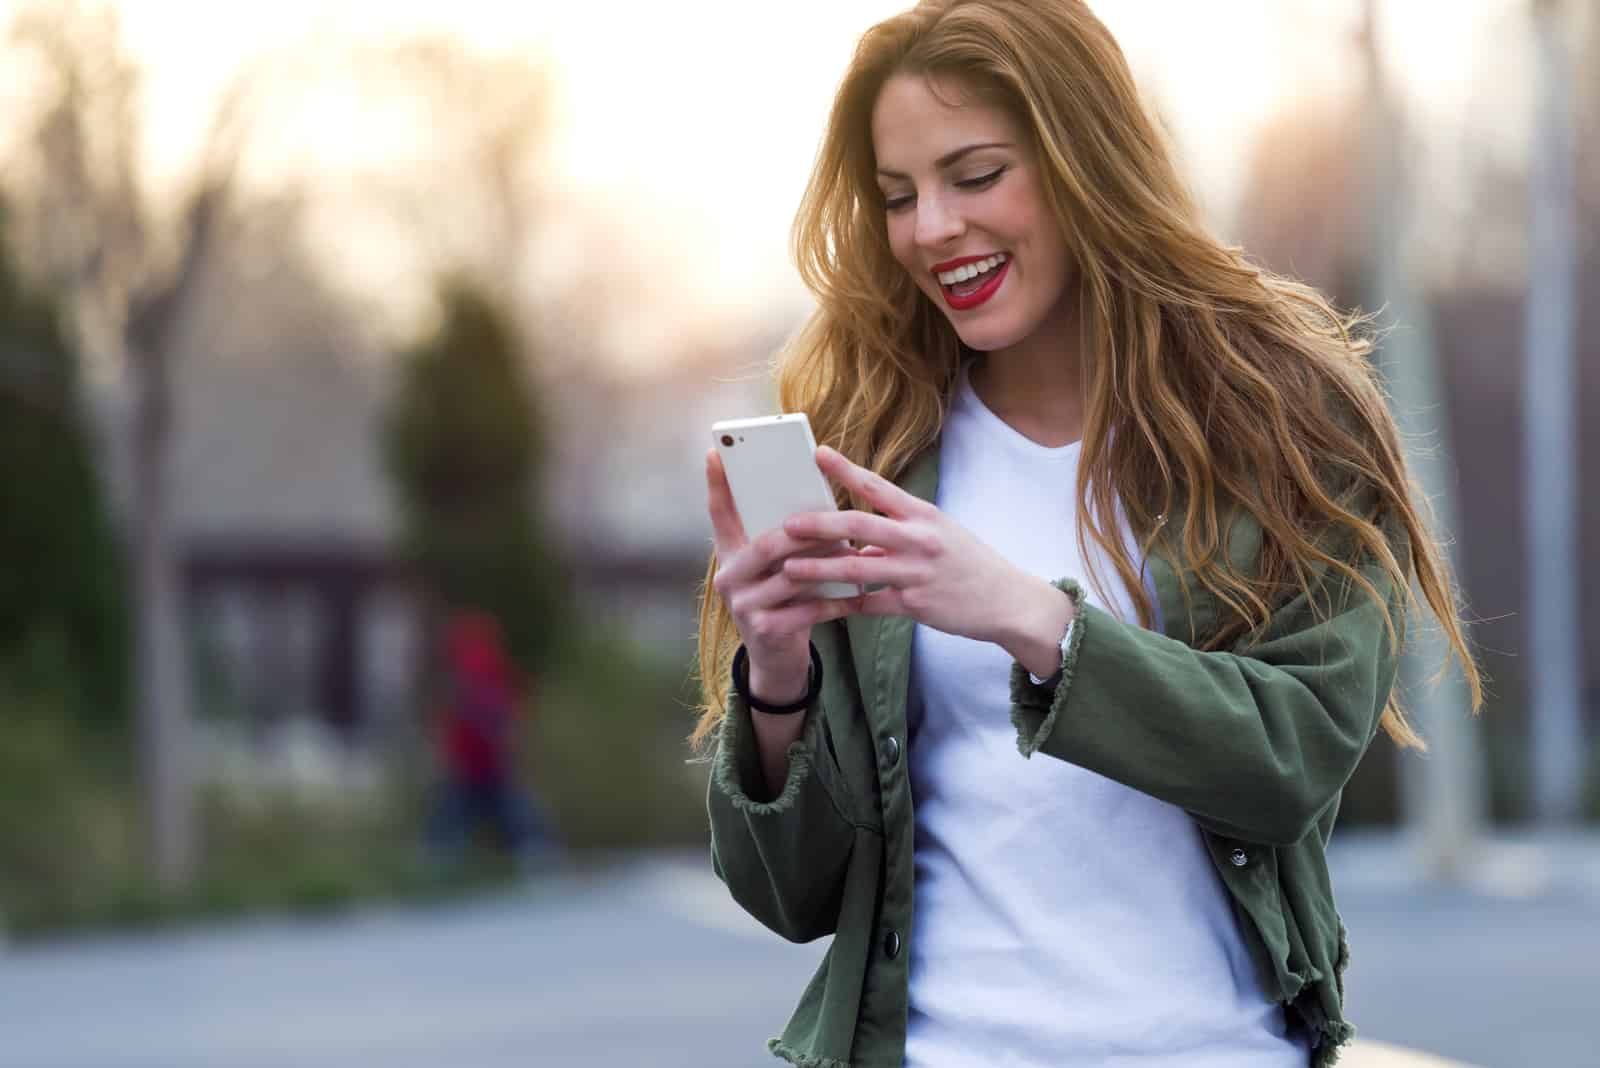 Une femme aux longs cheveux bruns se dresse dans la rue tenant un téléphone à la main